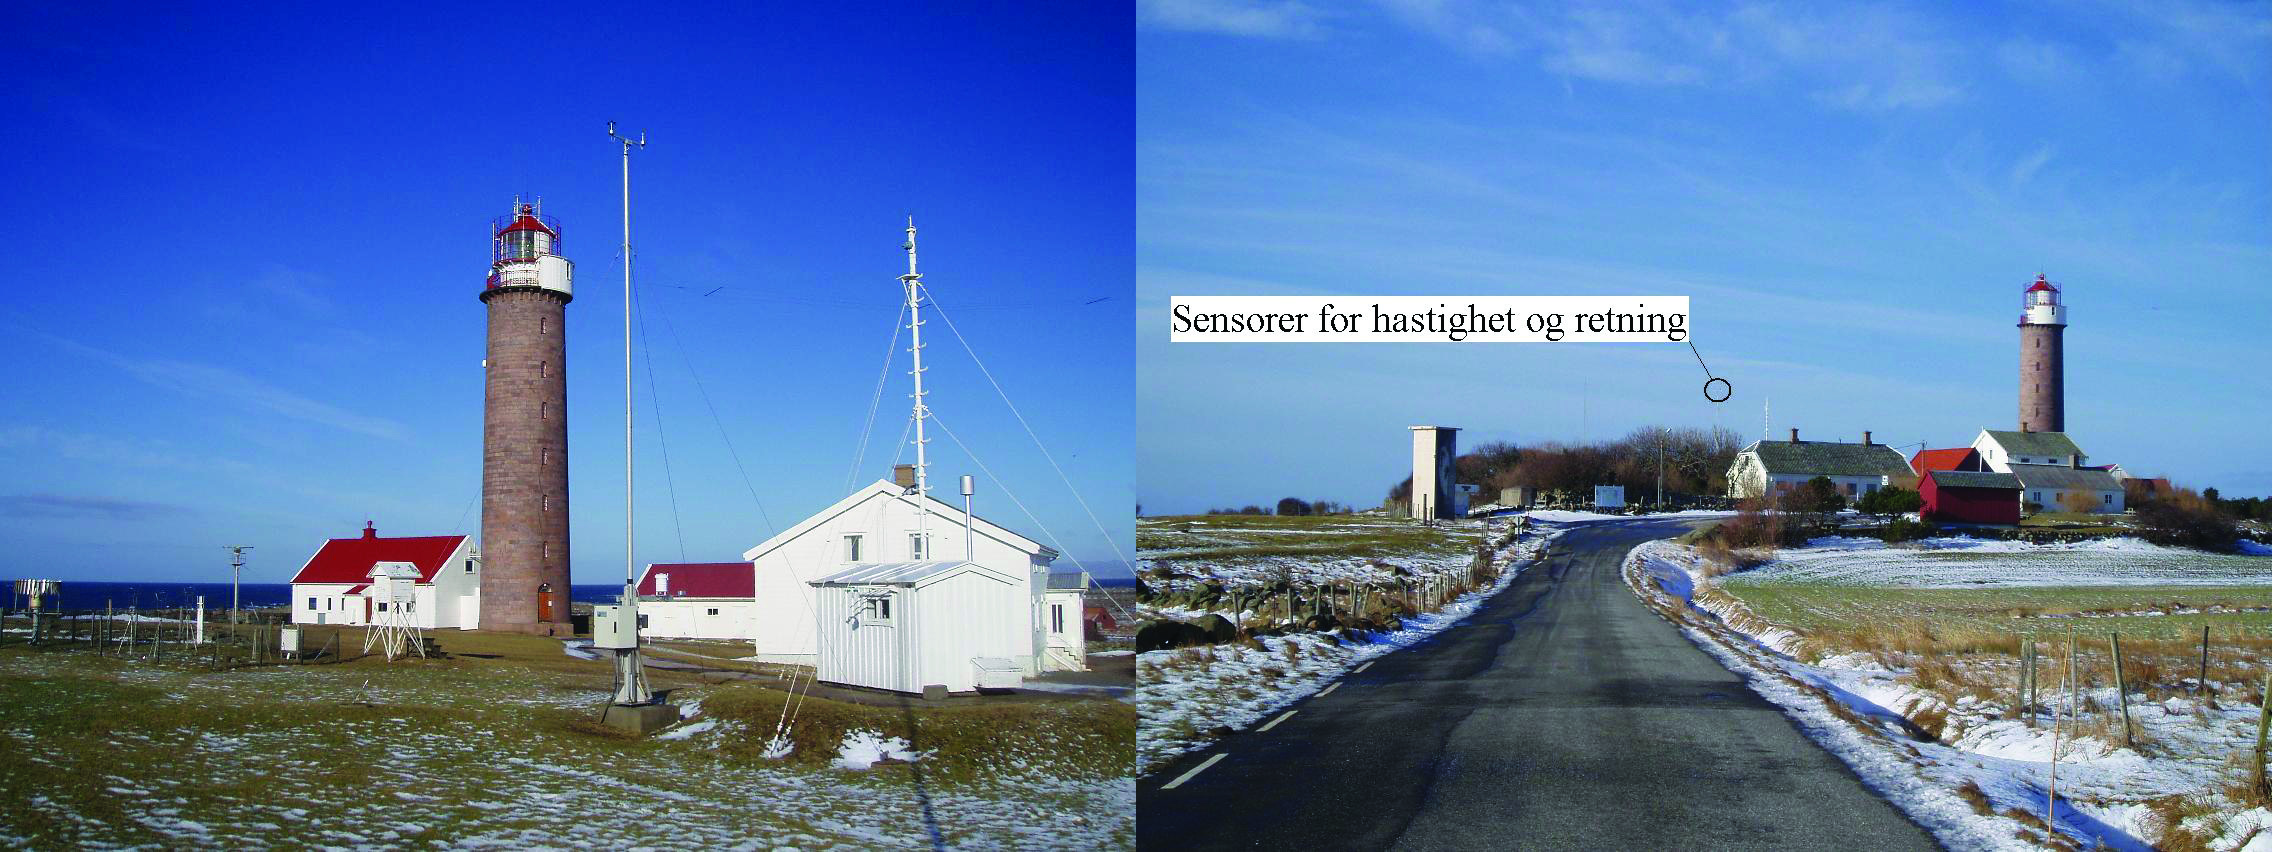 Ressurskartlegging av vindkraftlokasjoner 4.2.2 Lista fyr Lista værstasjon ble automatisert den 1. juni 1994 og ligger i umiddelbar nærhet til Lista fyr med driftsbygninger.